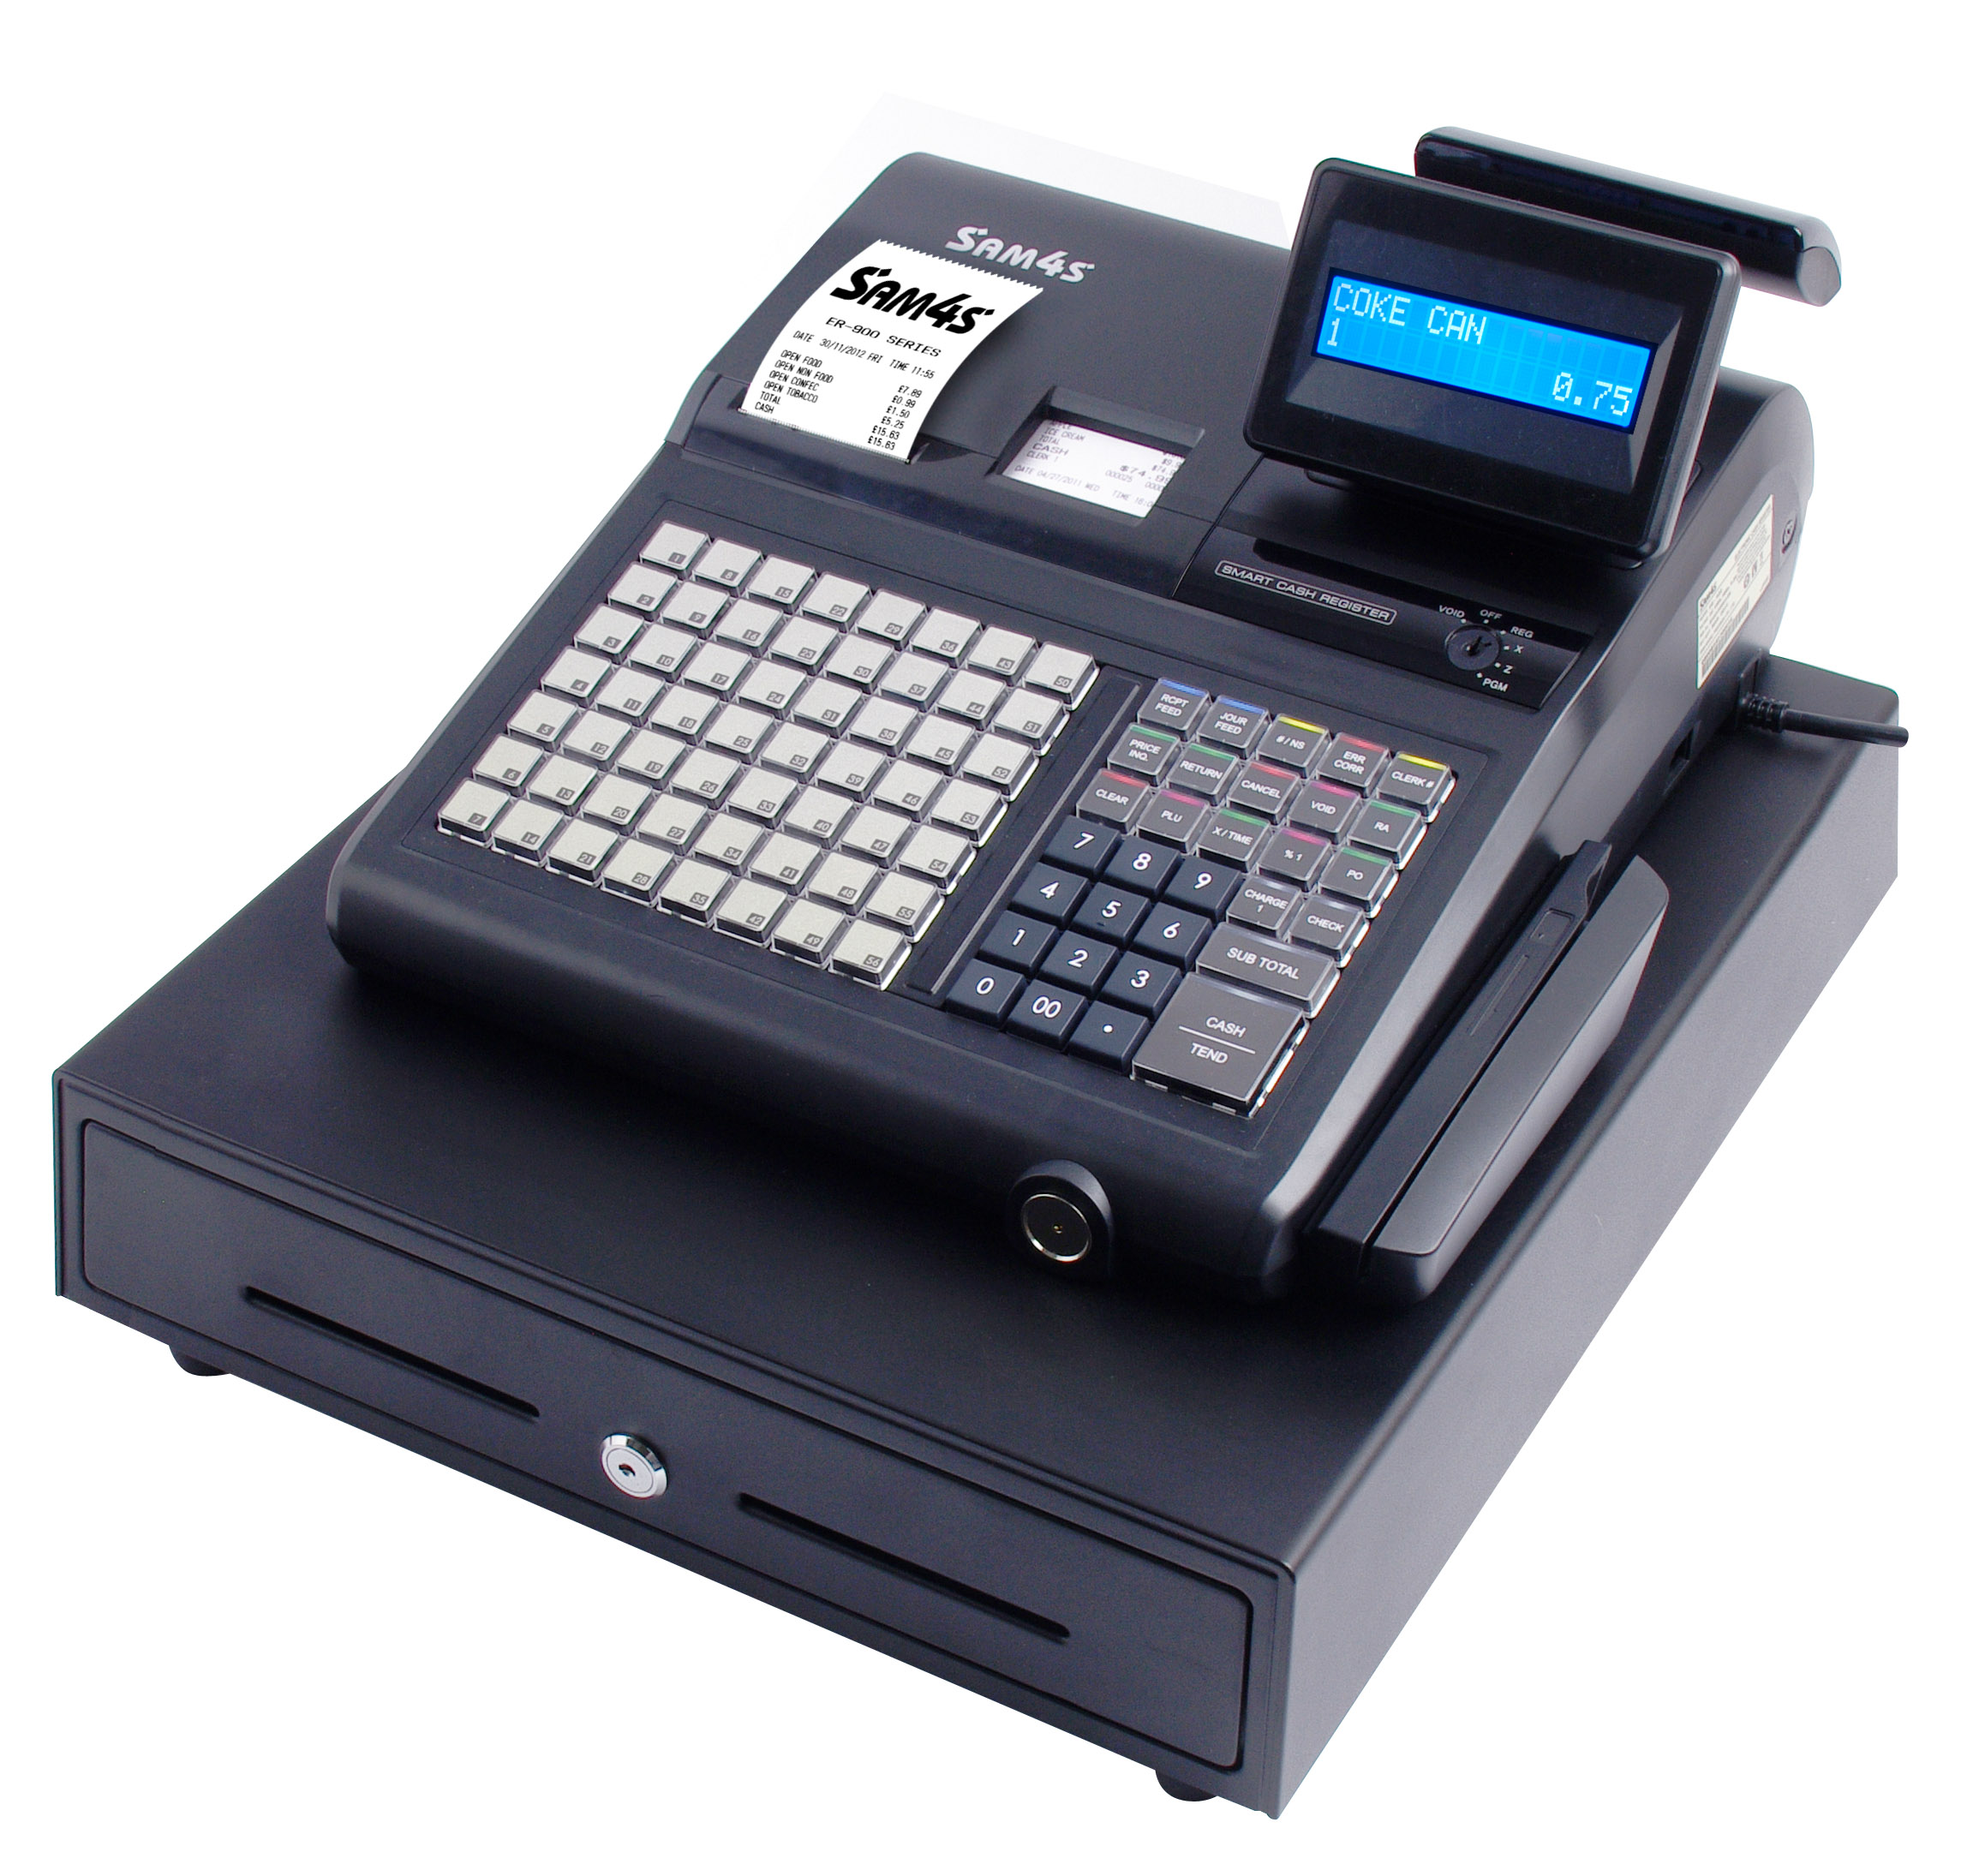 ER-945 Cash Register